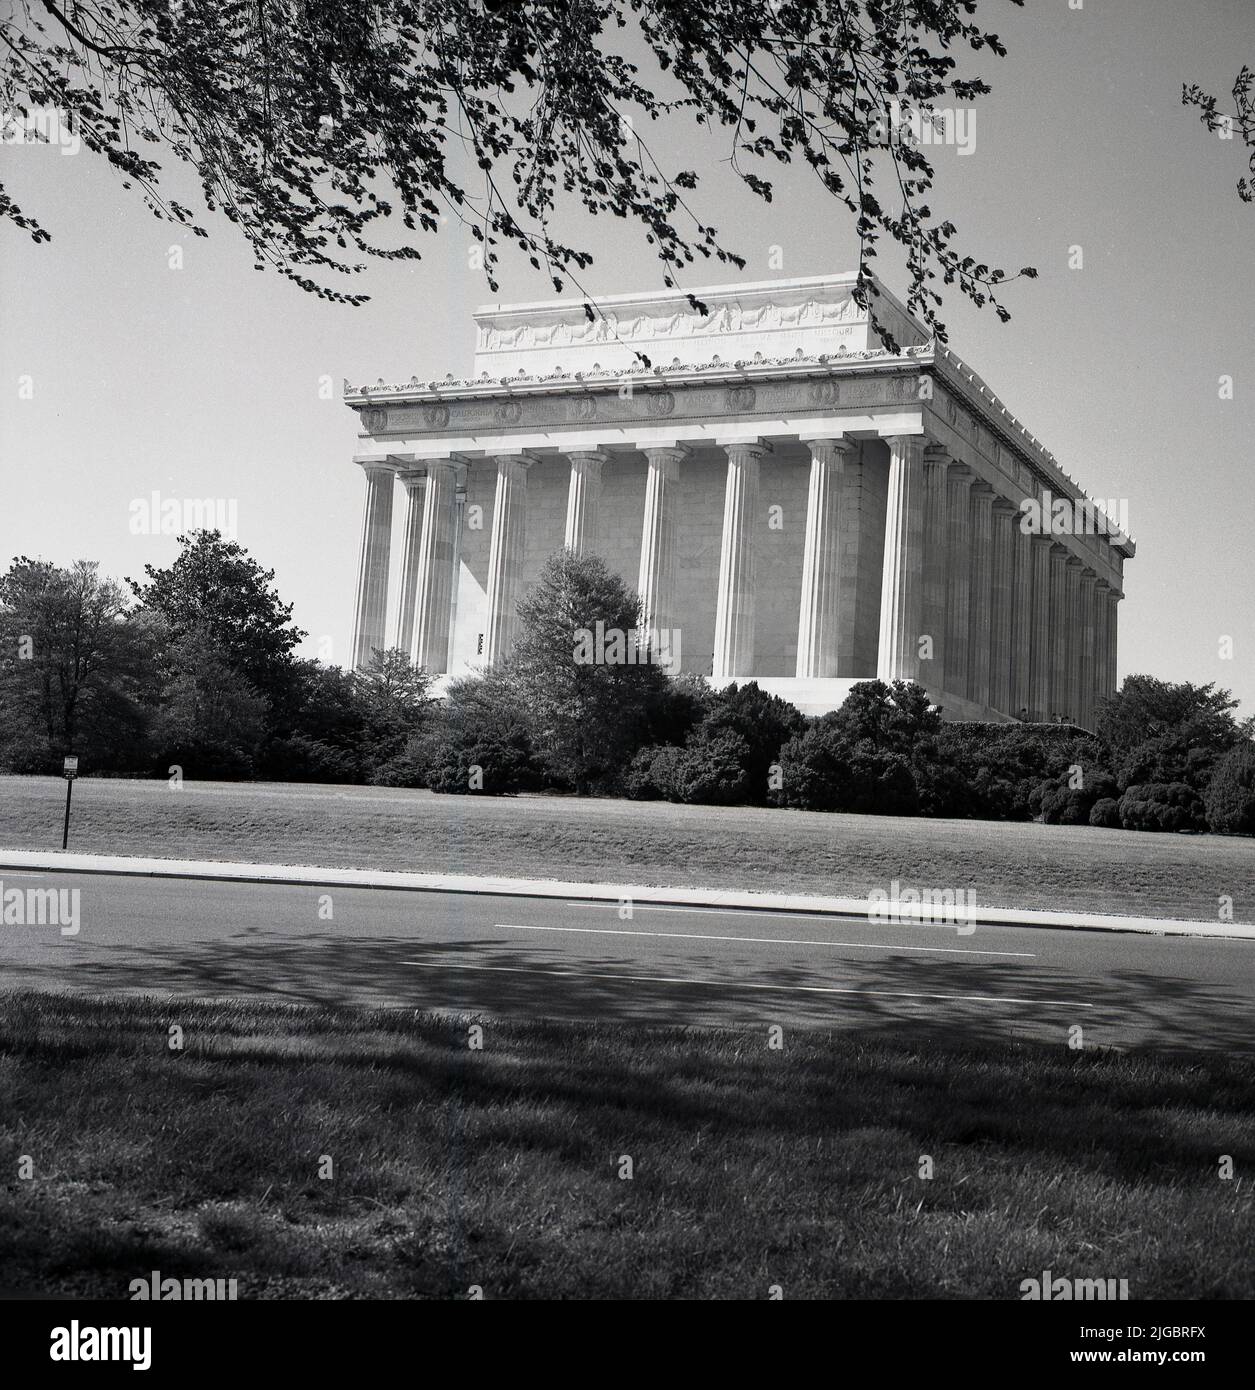 1960s, storico, vista esterna da questa era del Lincoln Memorial, un tempio neoclassico a Washington, DC, USA, un monumento nazionale al presidente degli Stati Uniti del 16th, Abraham Lincoln. Inaugurato nel 1922, l'architetto dell'edificio di ispirazione Partenone era Henry Bacon. Foto Stock